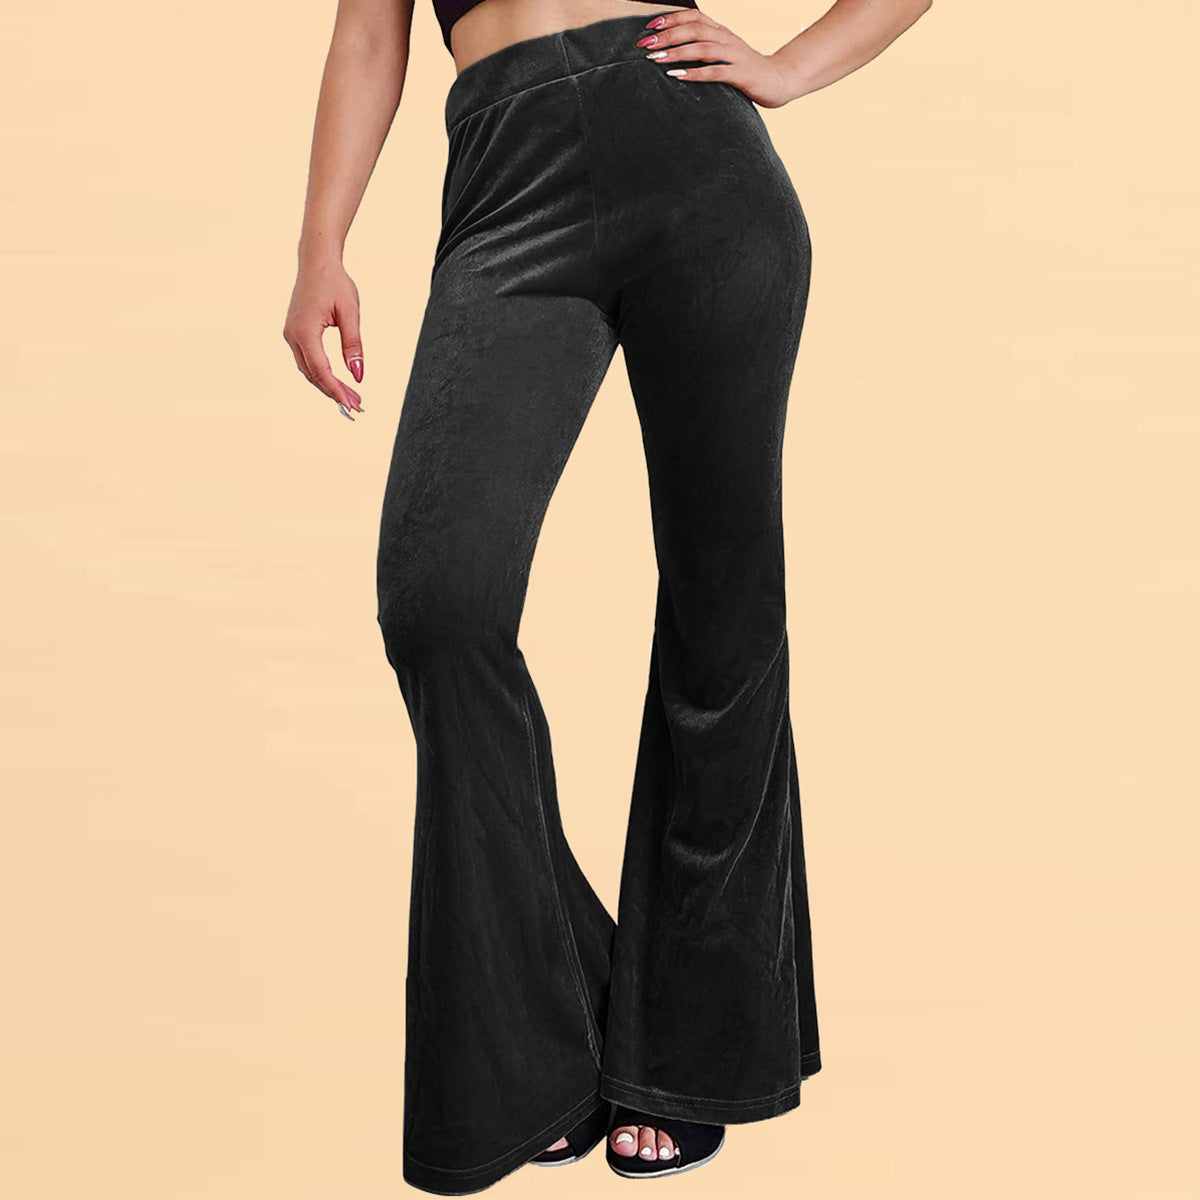 Velvet Bell-bottom Pants Casual Women